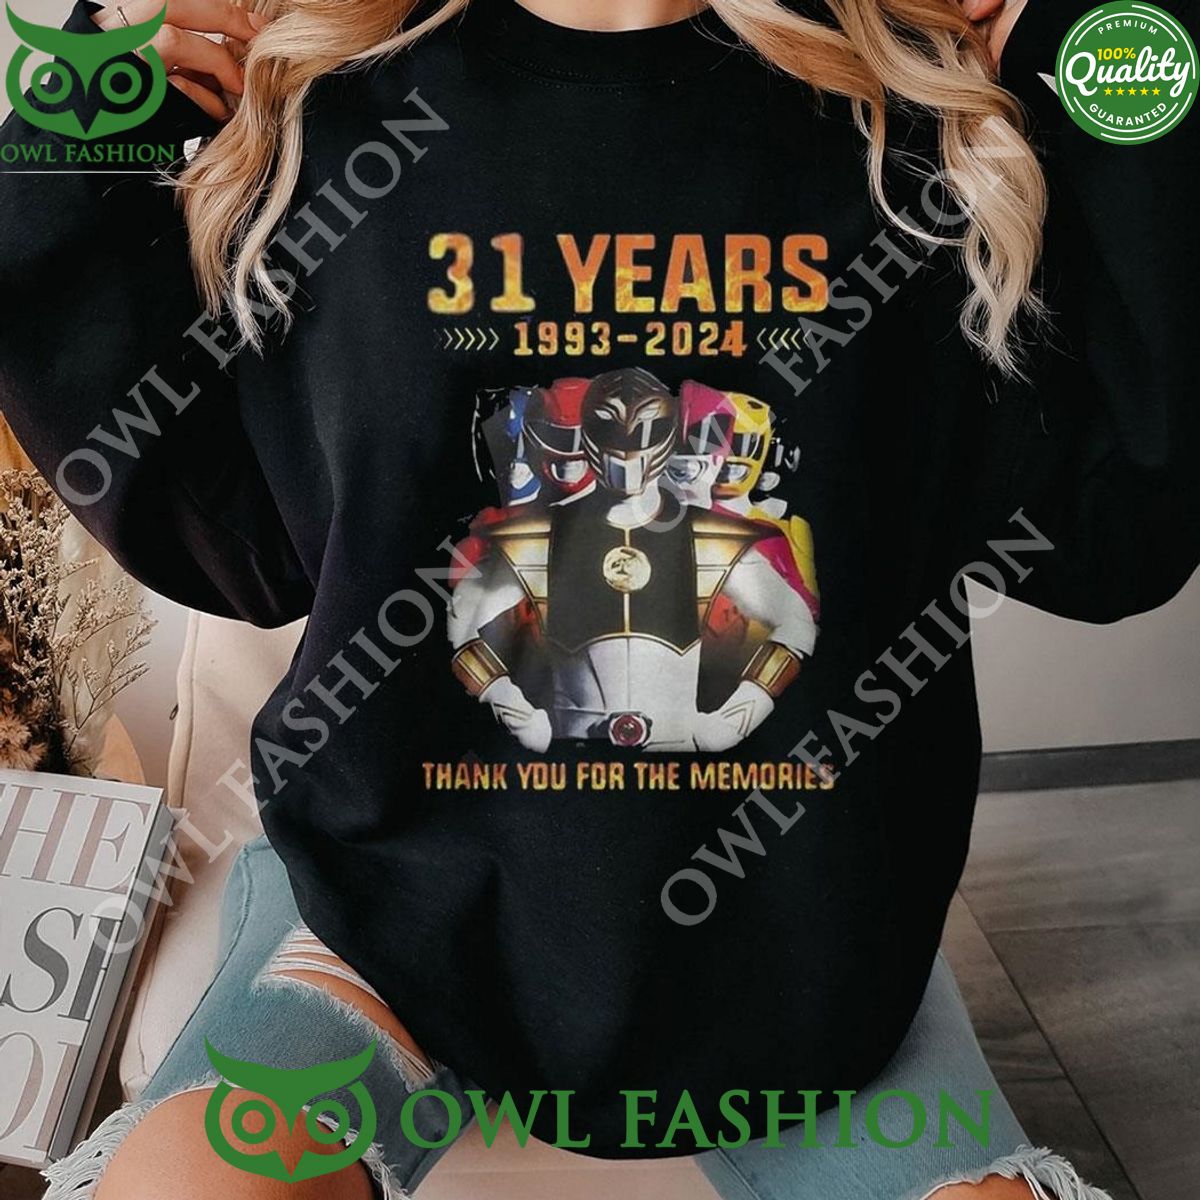 31 Years 1993 2024 Power Rangers Memories Hoodie Shirt Elegant picture.